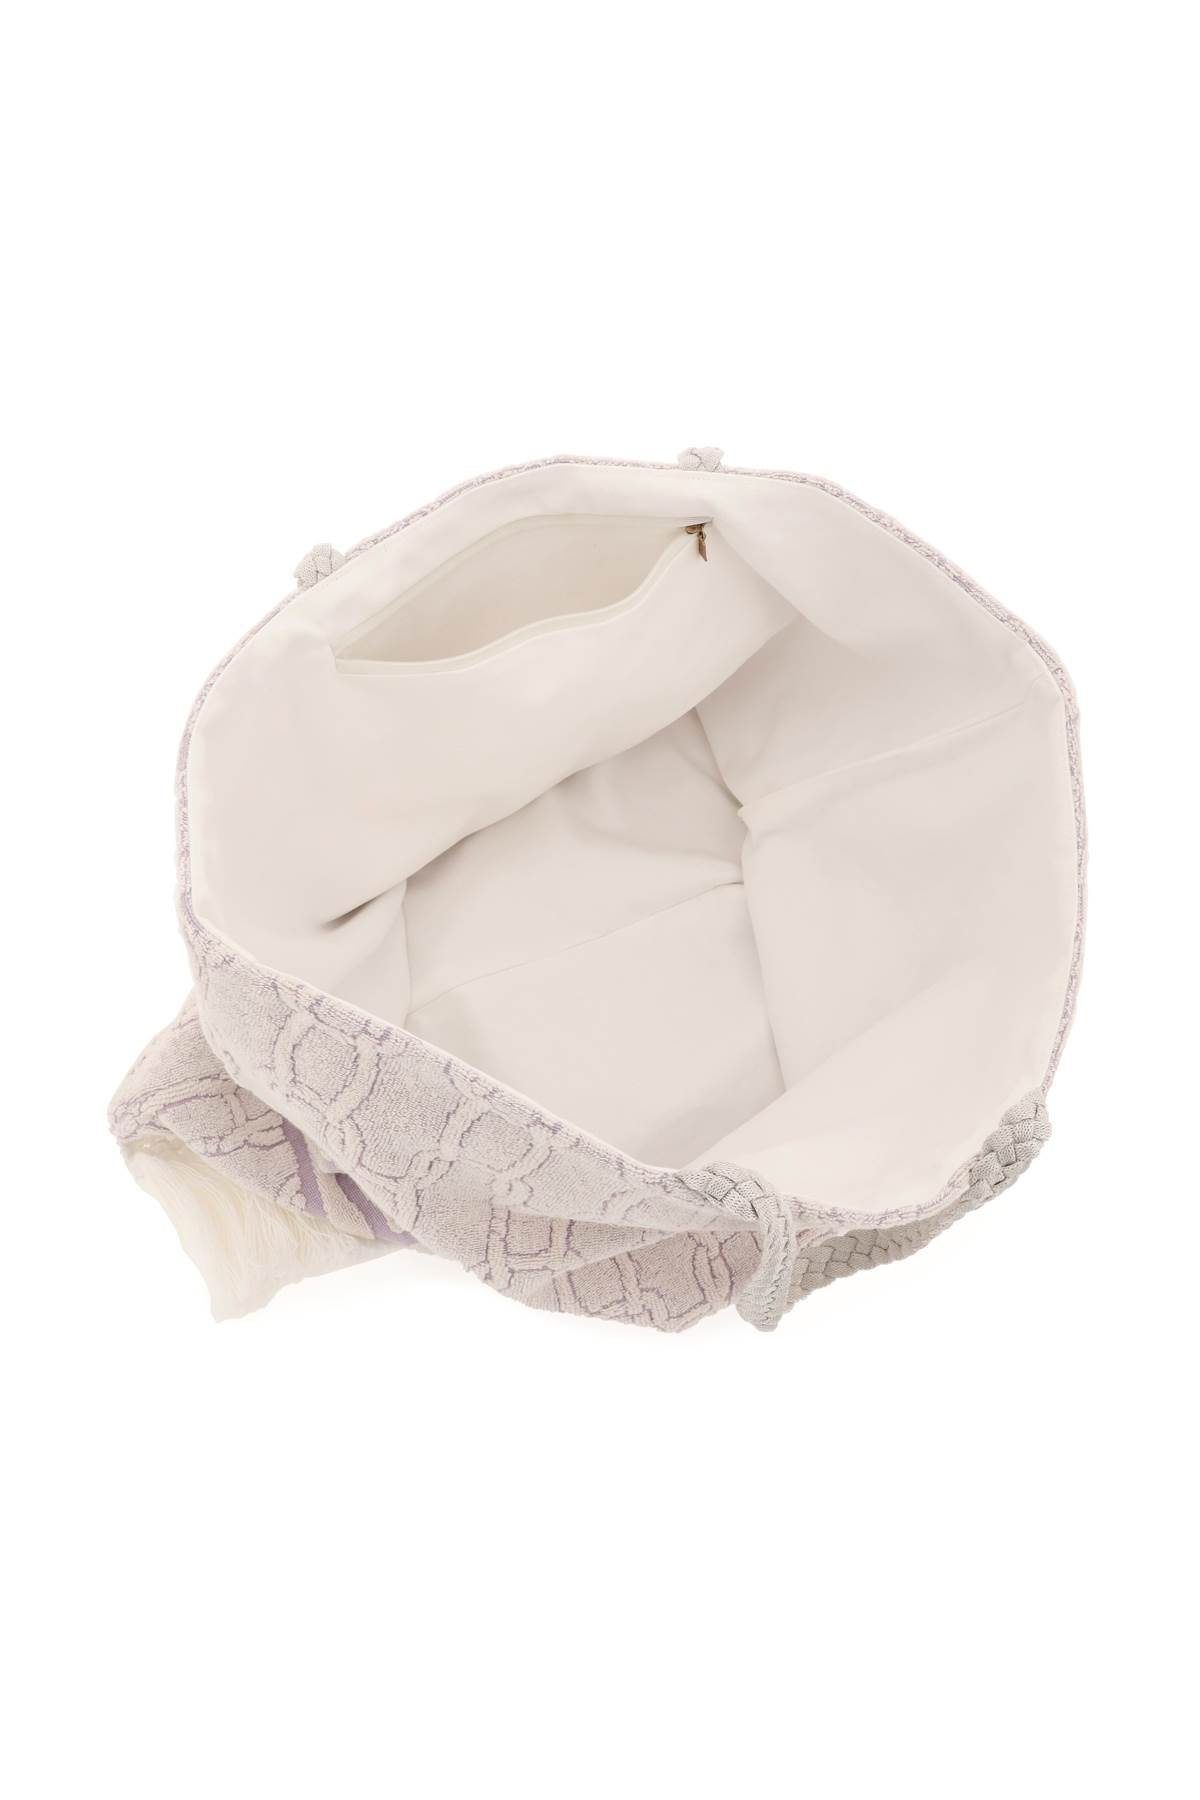 Shop Agnona Cotton Tote Bag In Malva (white)